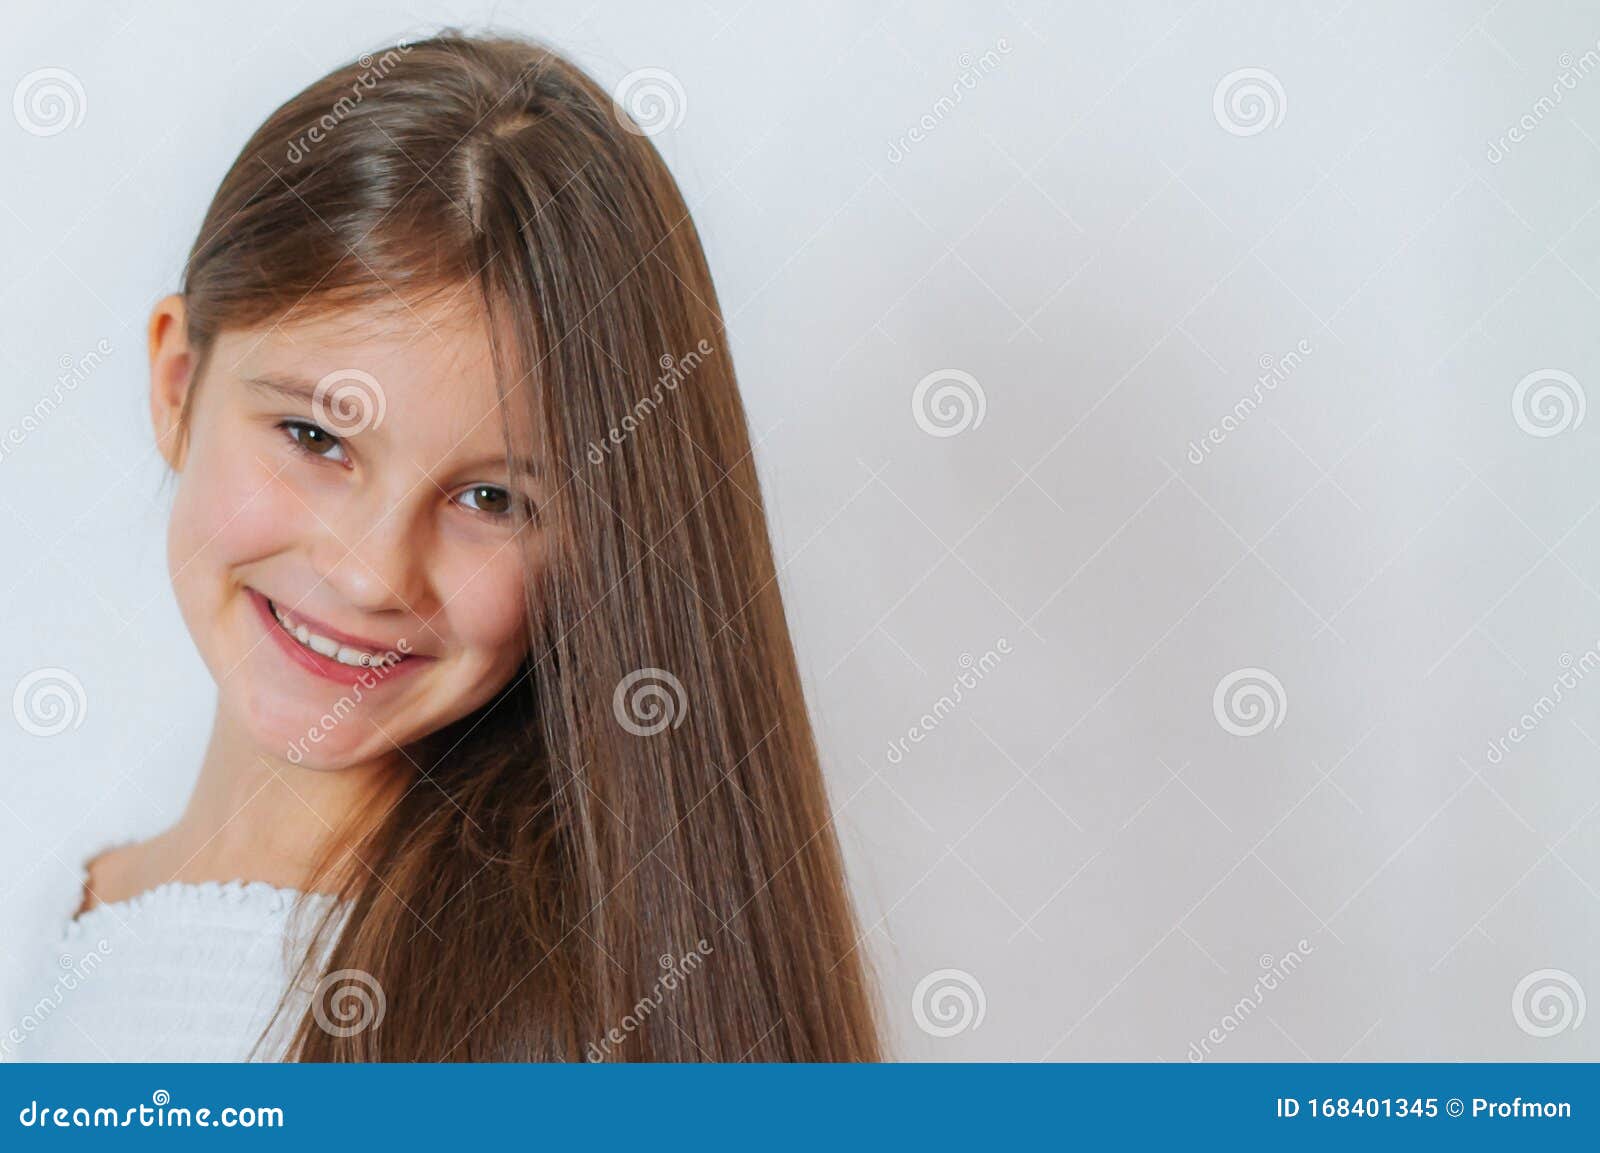 可爱的微笑小女孩梳梳头梳头 库存照片. 图片 包括有 节假日, 梳子, 表面, 背包, 发型, 有吸引力的 - 168401108